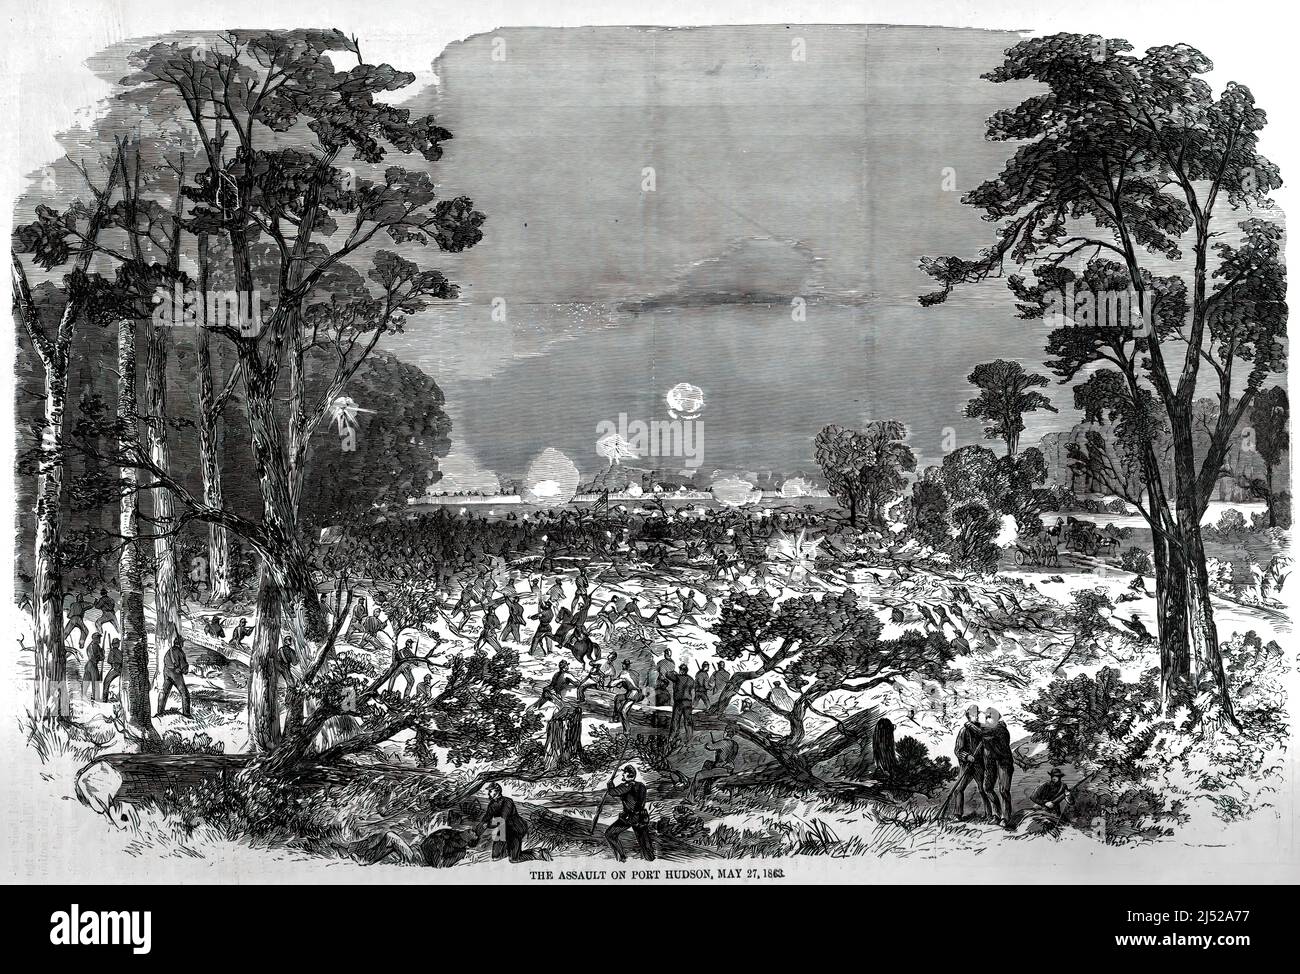 Siège de Port Hudson, le 27 mai 1863, dans la guerre de Sécession. illustration du siècle 19th. Banque D'Images